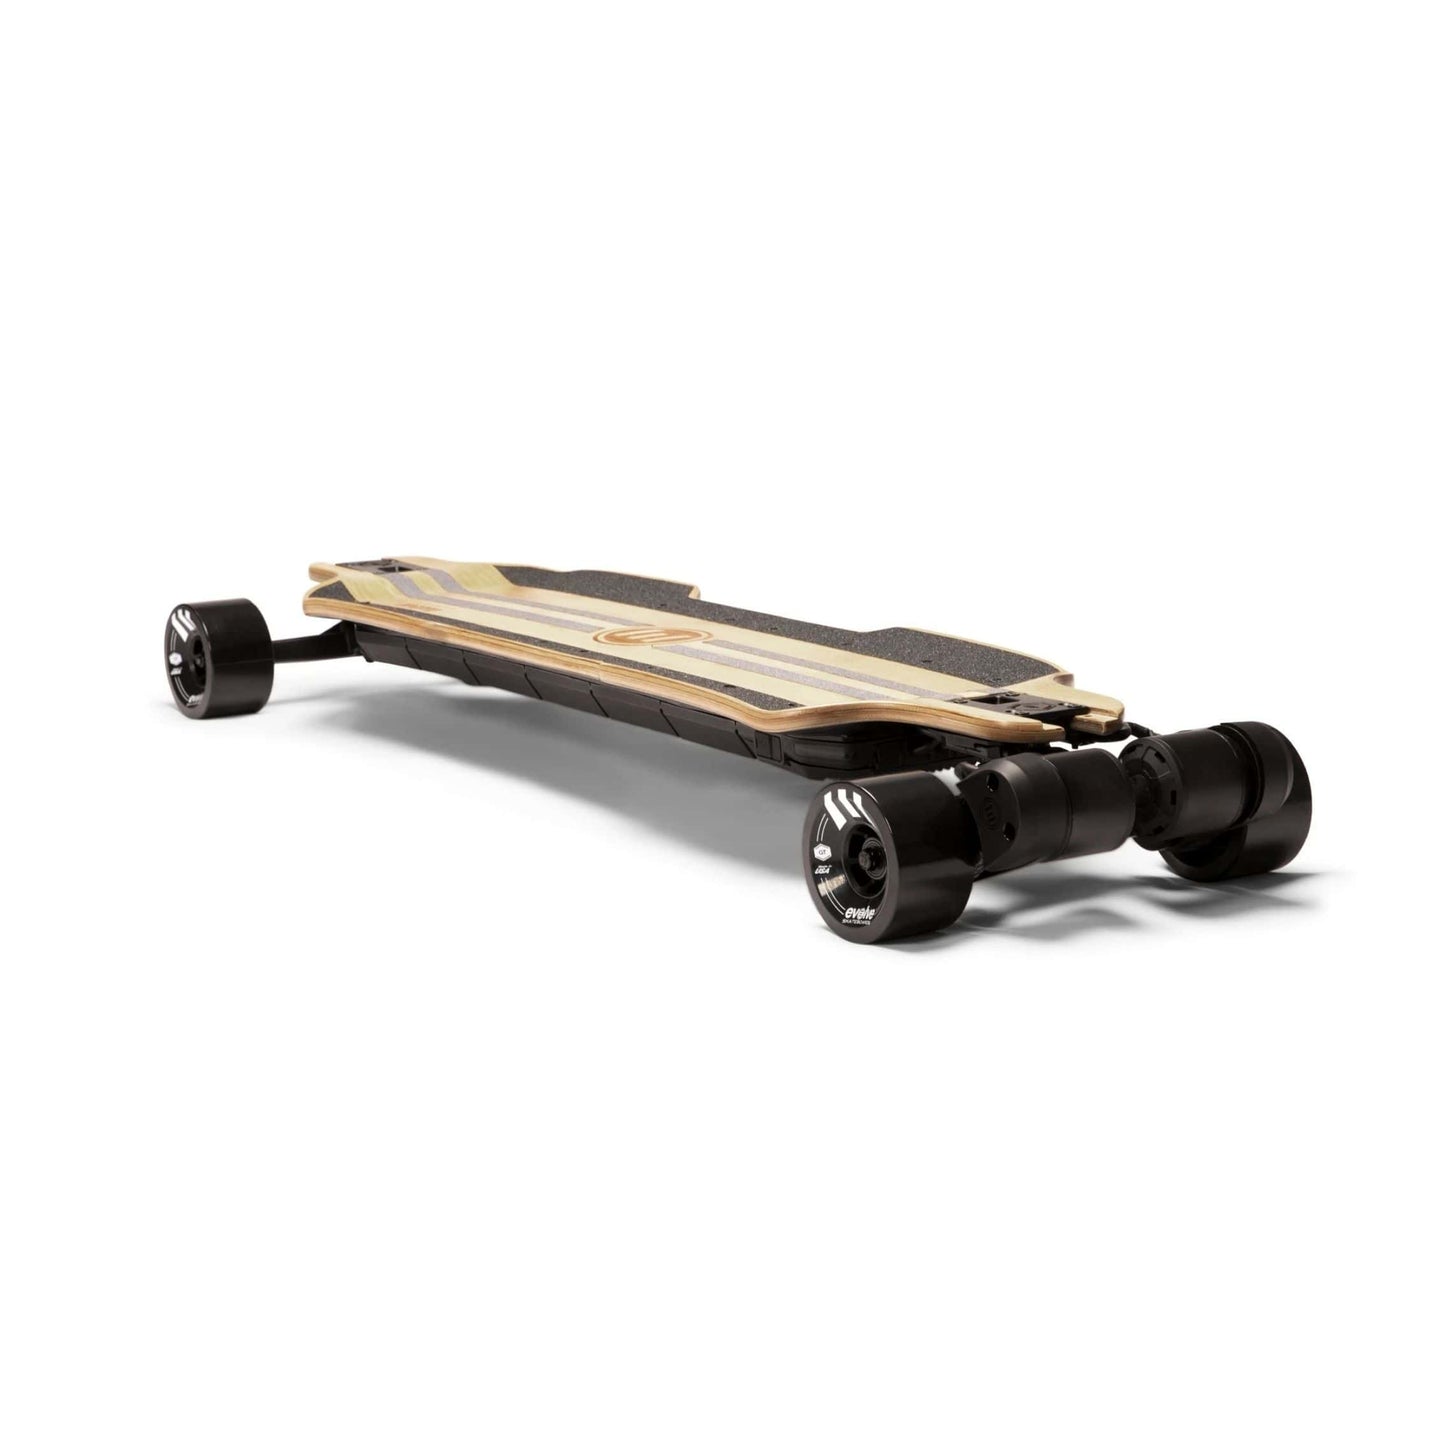 Evolve Hadean Bamboo 2 in 1 Electric Skateboard